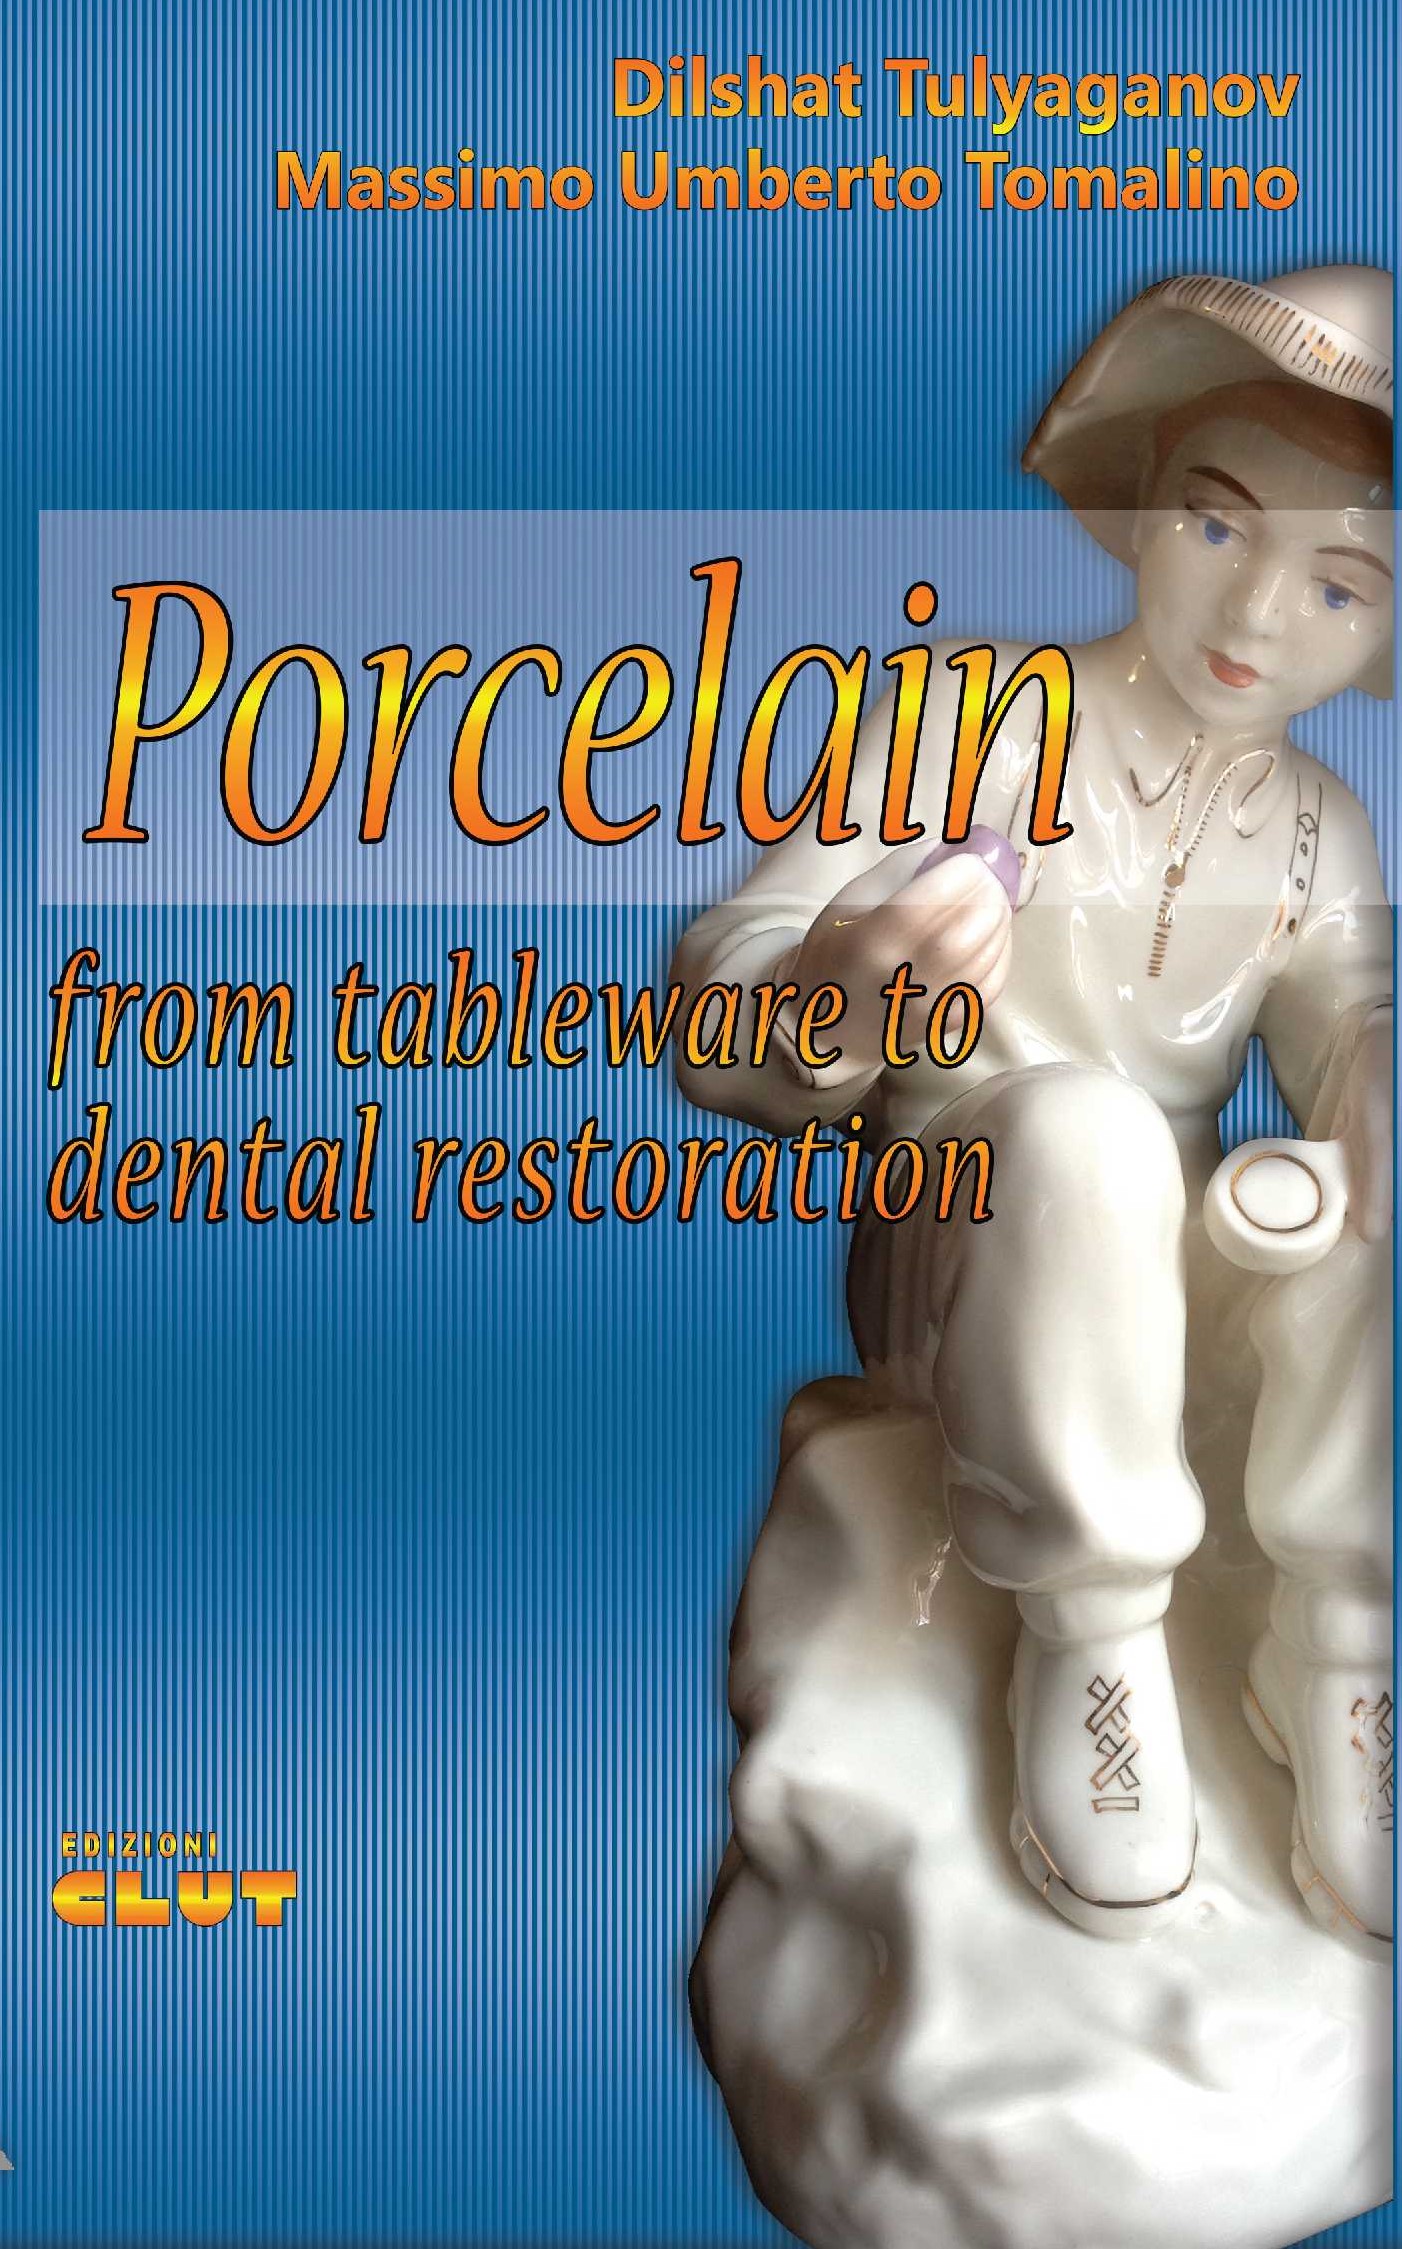 PORCELAIN - from tableware to dental restoration